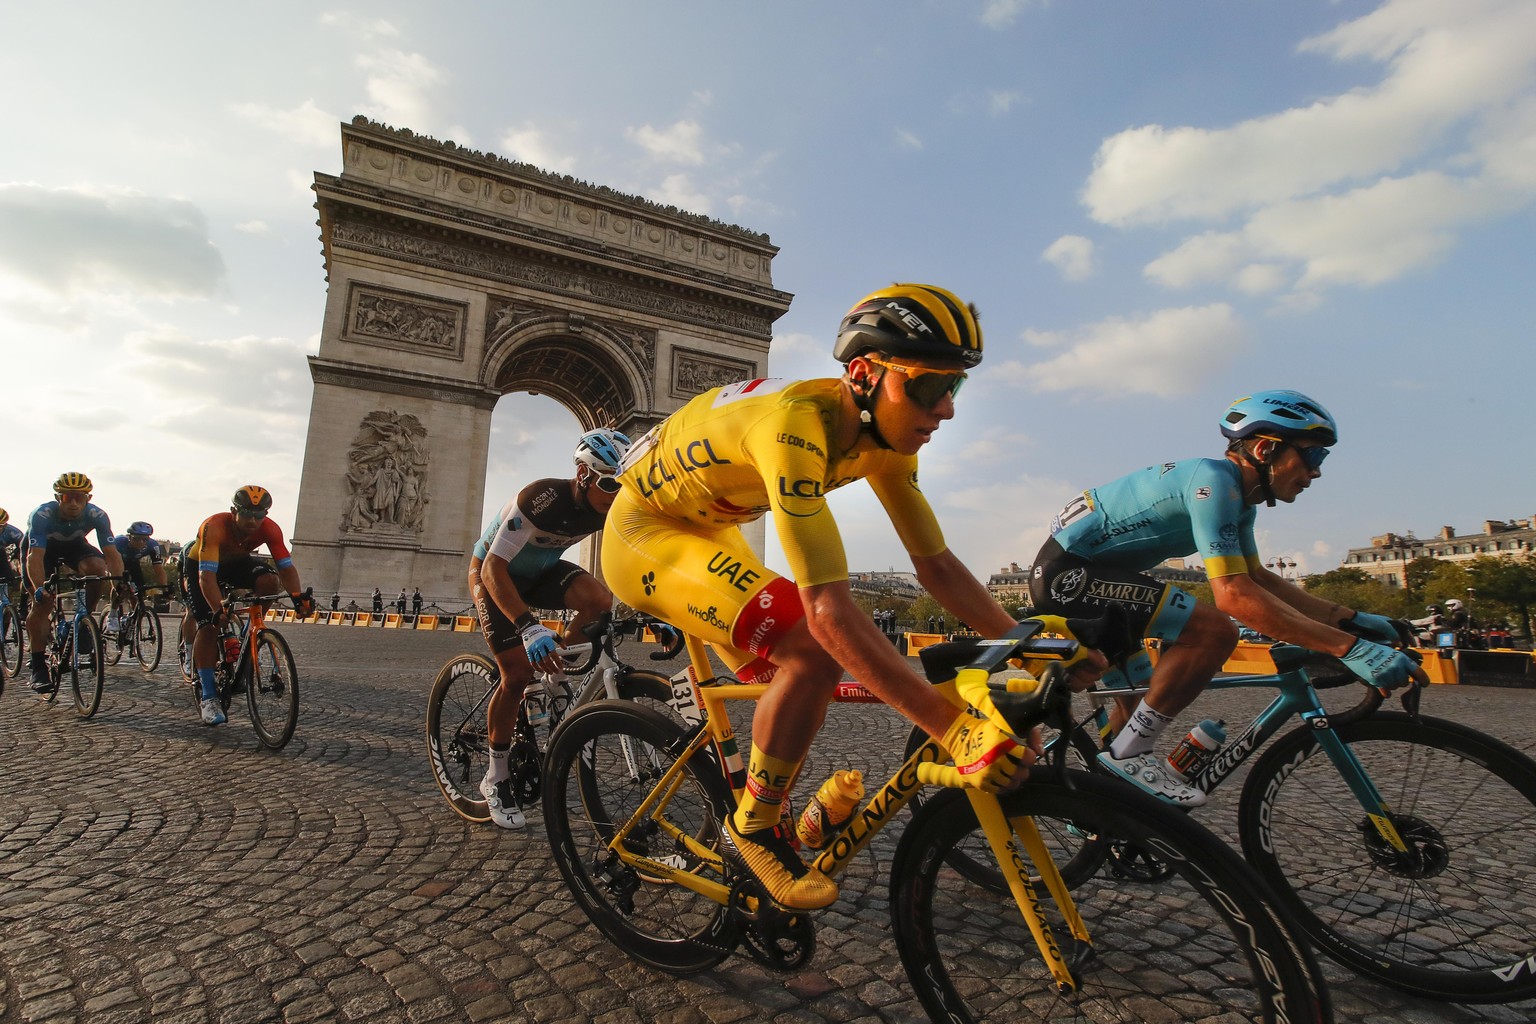 dpatopbilder - 20.09.2020, Frankreich, Paris: Radsport: UCI WorldTour - Tour de France, 21. Etappe, Mantes-la-Jolie - Paris (122,00 km). Tadej Pogacar (M) aus Slowenien vom UAE